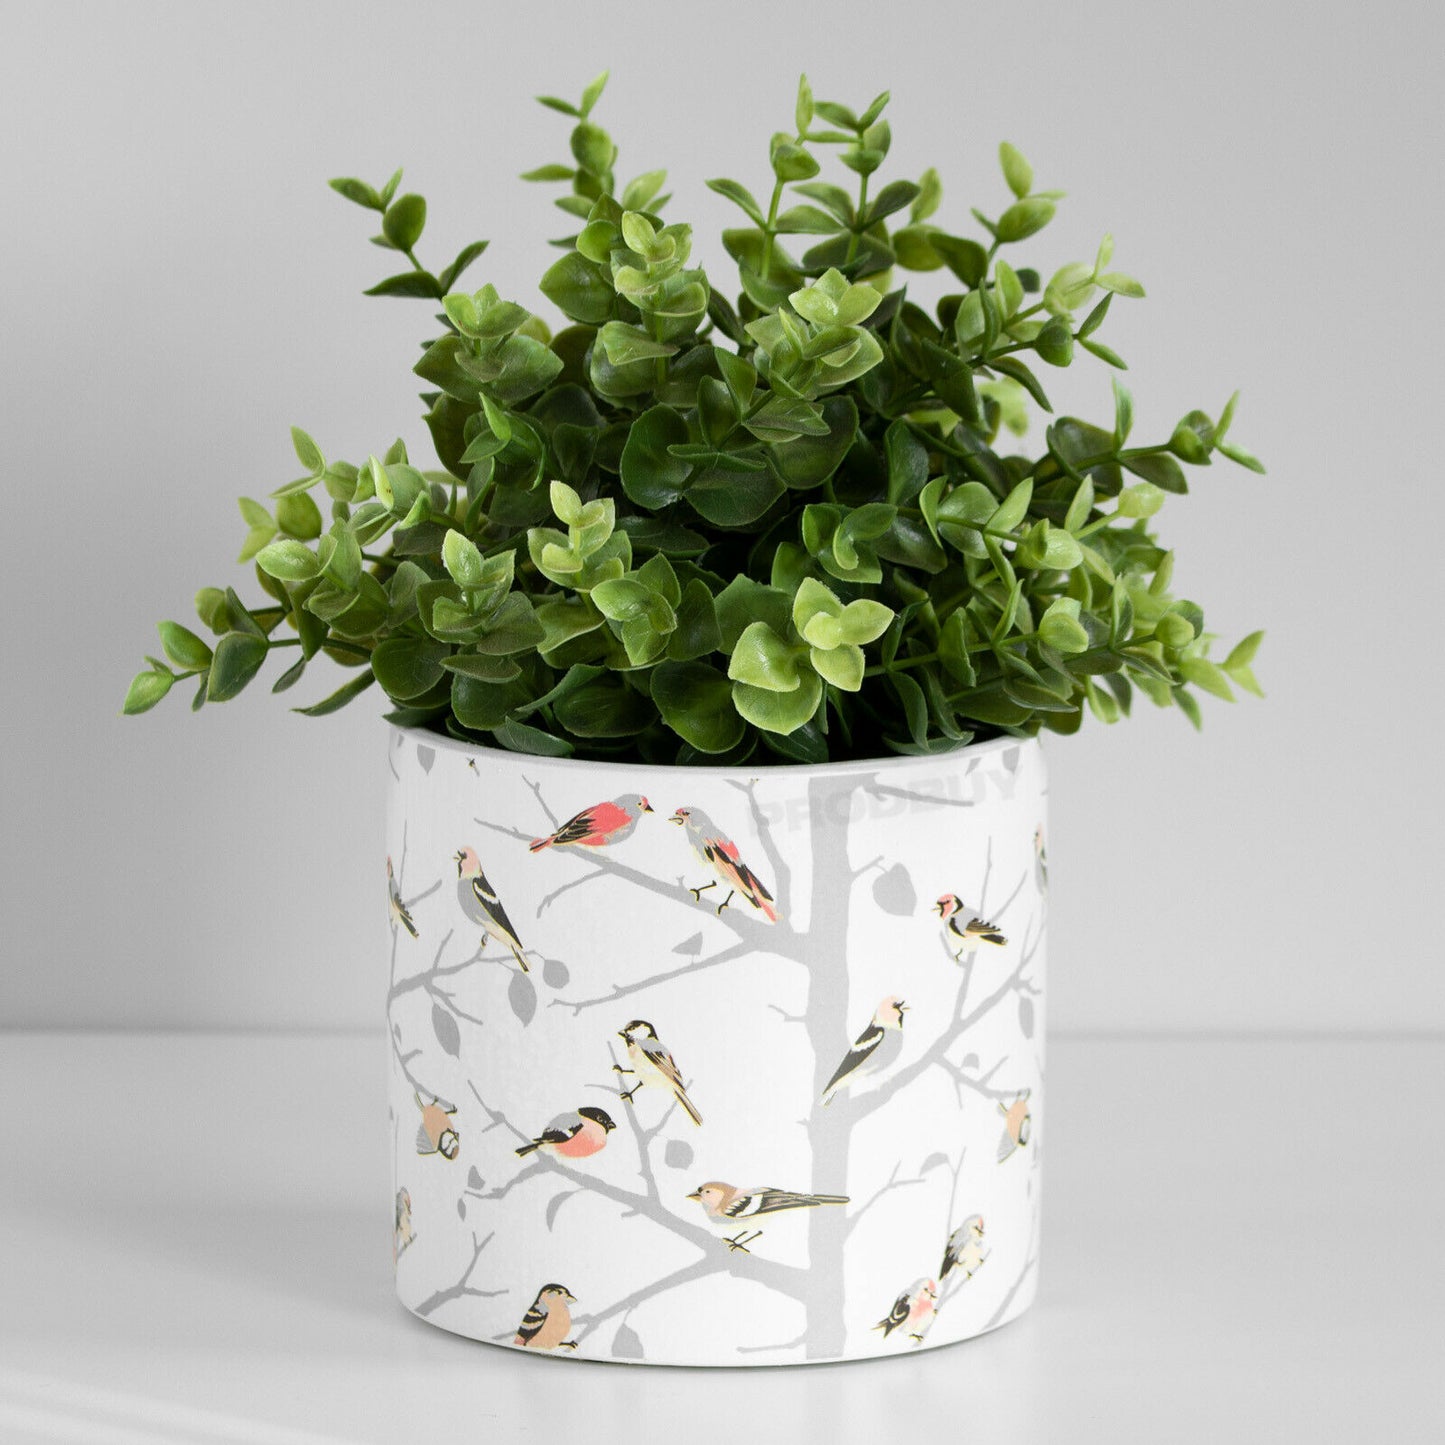 Birds On Tree Branches 13.6cm Plant Pot Medium Ceramic Indoor Cover